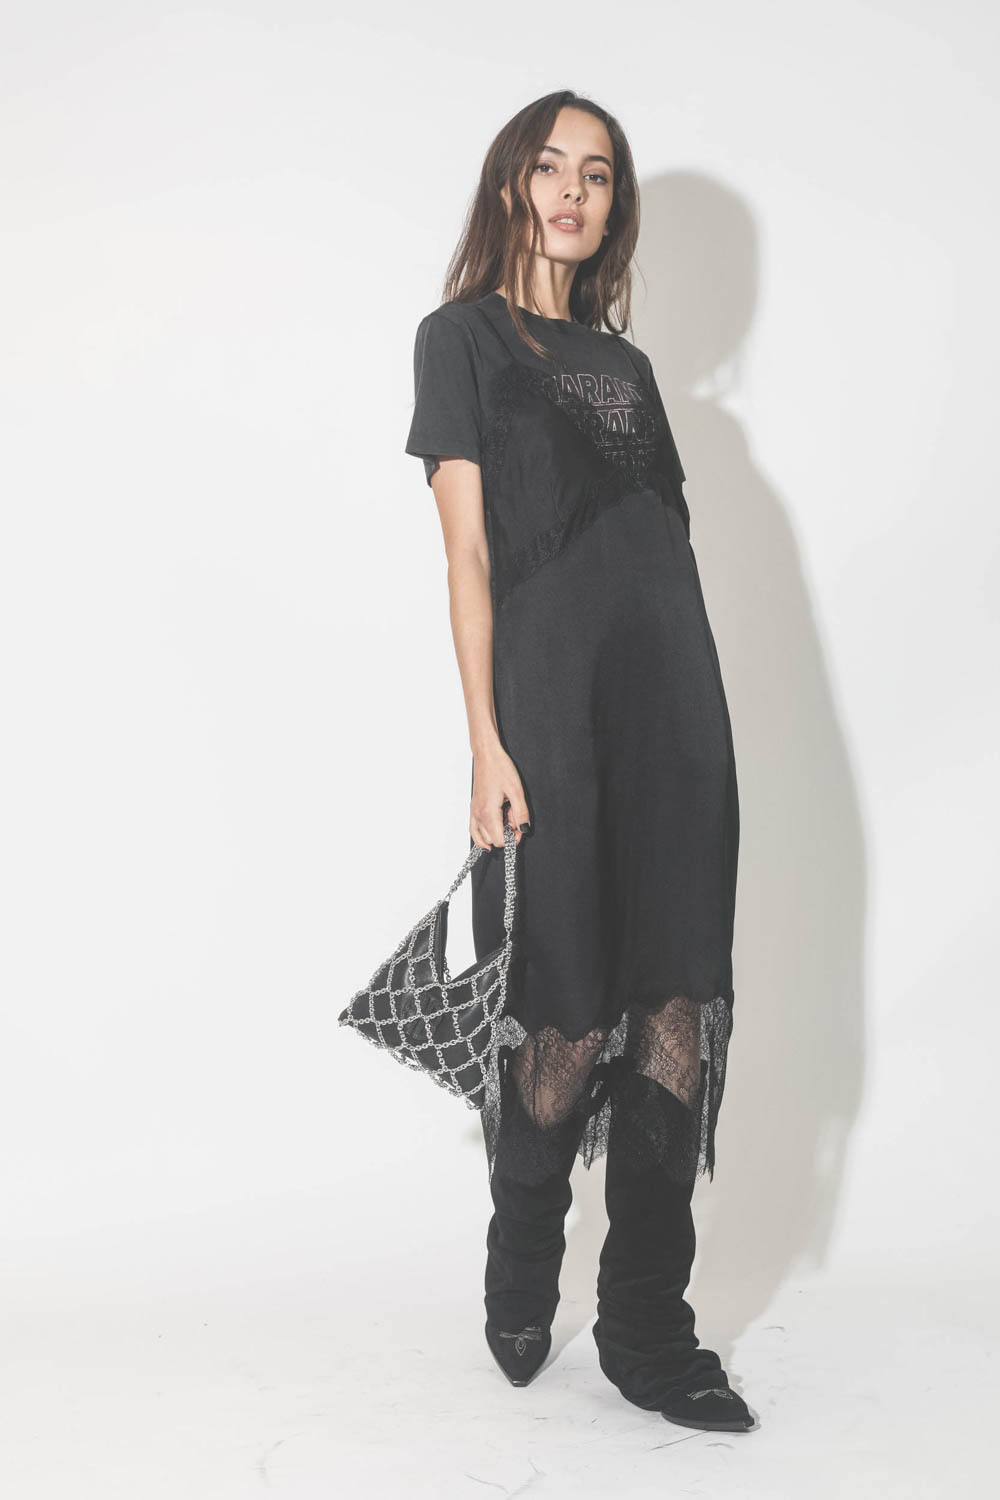 Robe fines bretelles en soie et dentelle noire Amélie Anine Bing. Porté en superposition sur un tee-shirt noir.